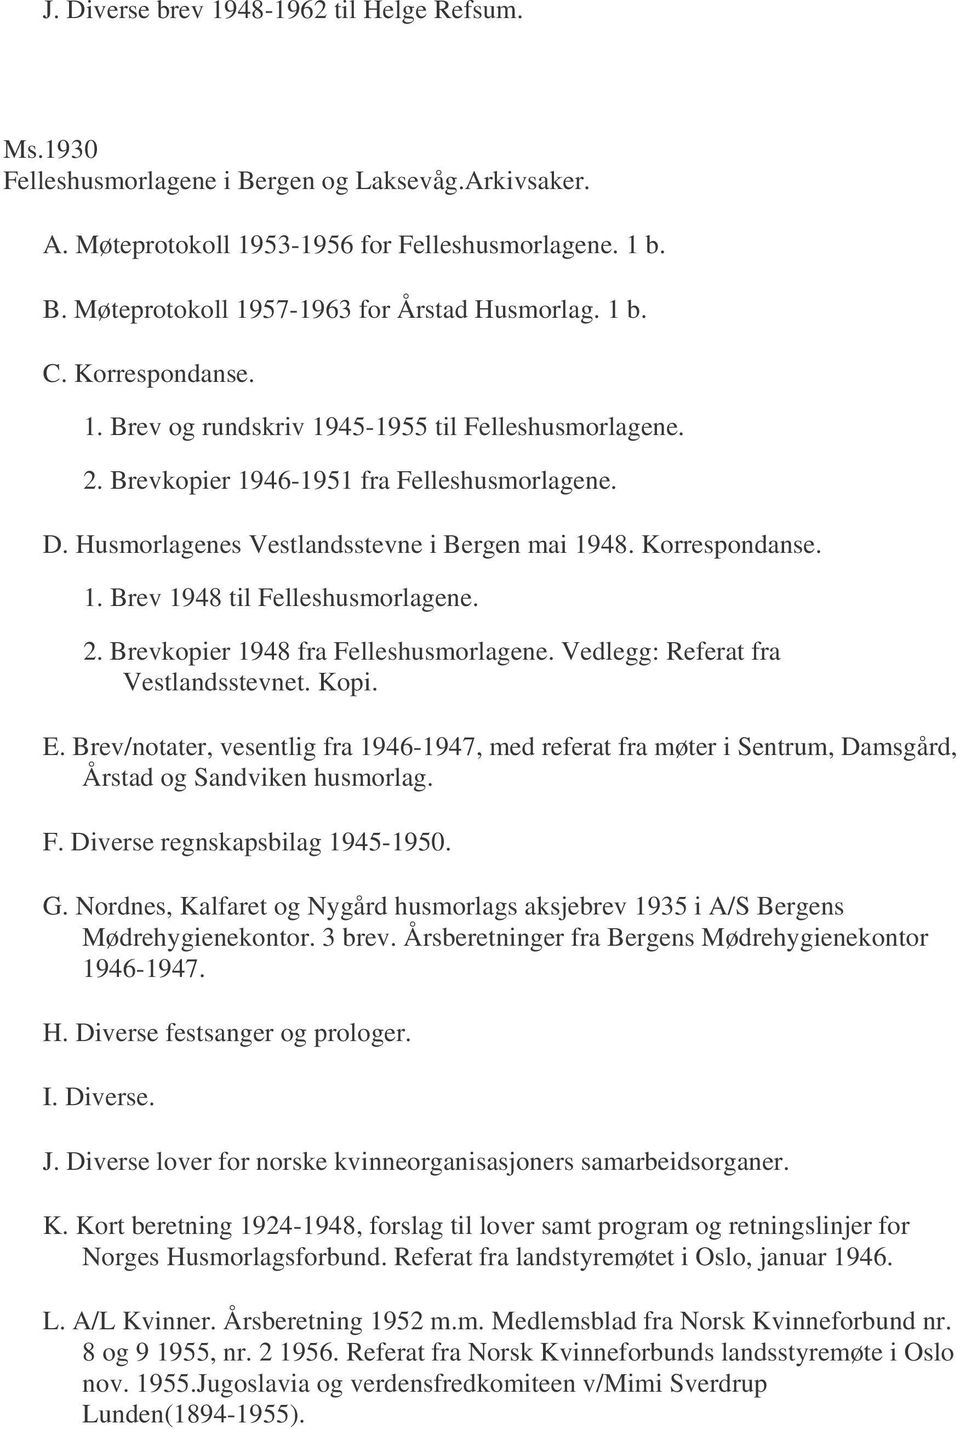 2. Brevkopier 1948 fra Felleshusmorlagene. Vedlegg: Referat fra Vestlandsstevnet. Kopi. E.